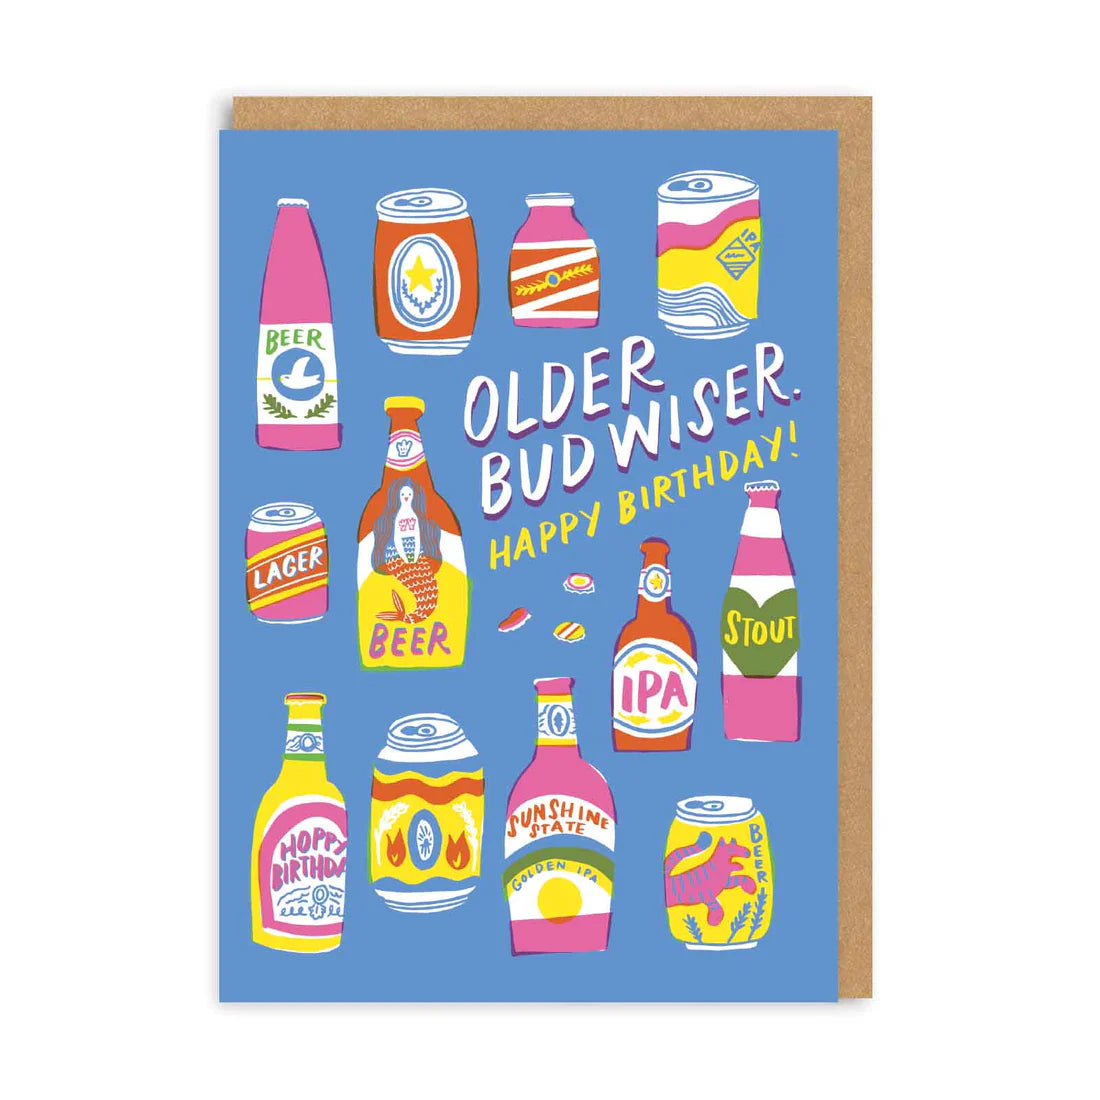 Pivní narozeninové přání Older Budwiser, A6